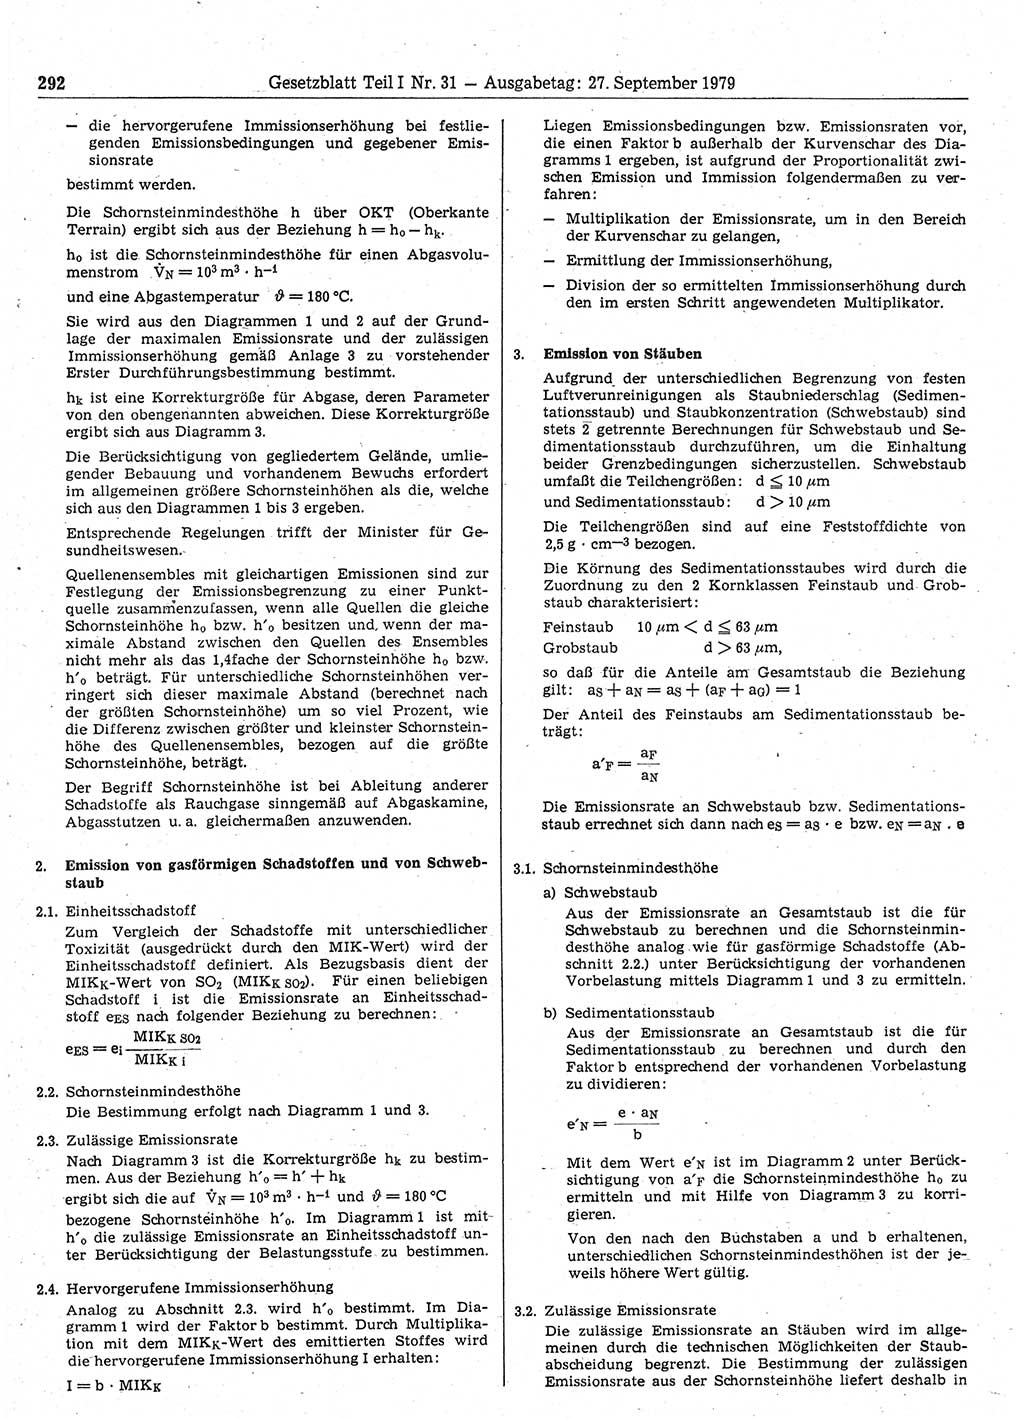 Gesetzblatt (GBl.) der Deutschen Demokratischen Republik (DDR) Teil Ⅰ 1979, Seite 292 (GBl. DDR Ⅰ 1979, S. 292)